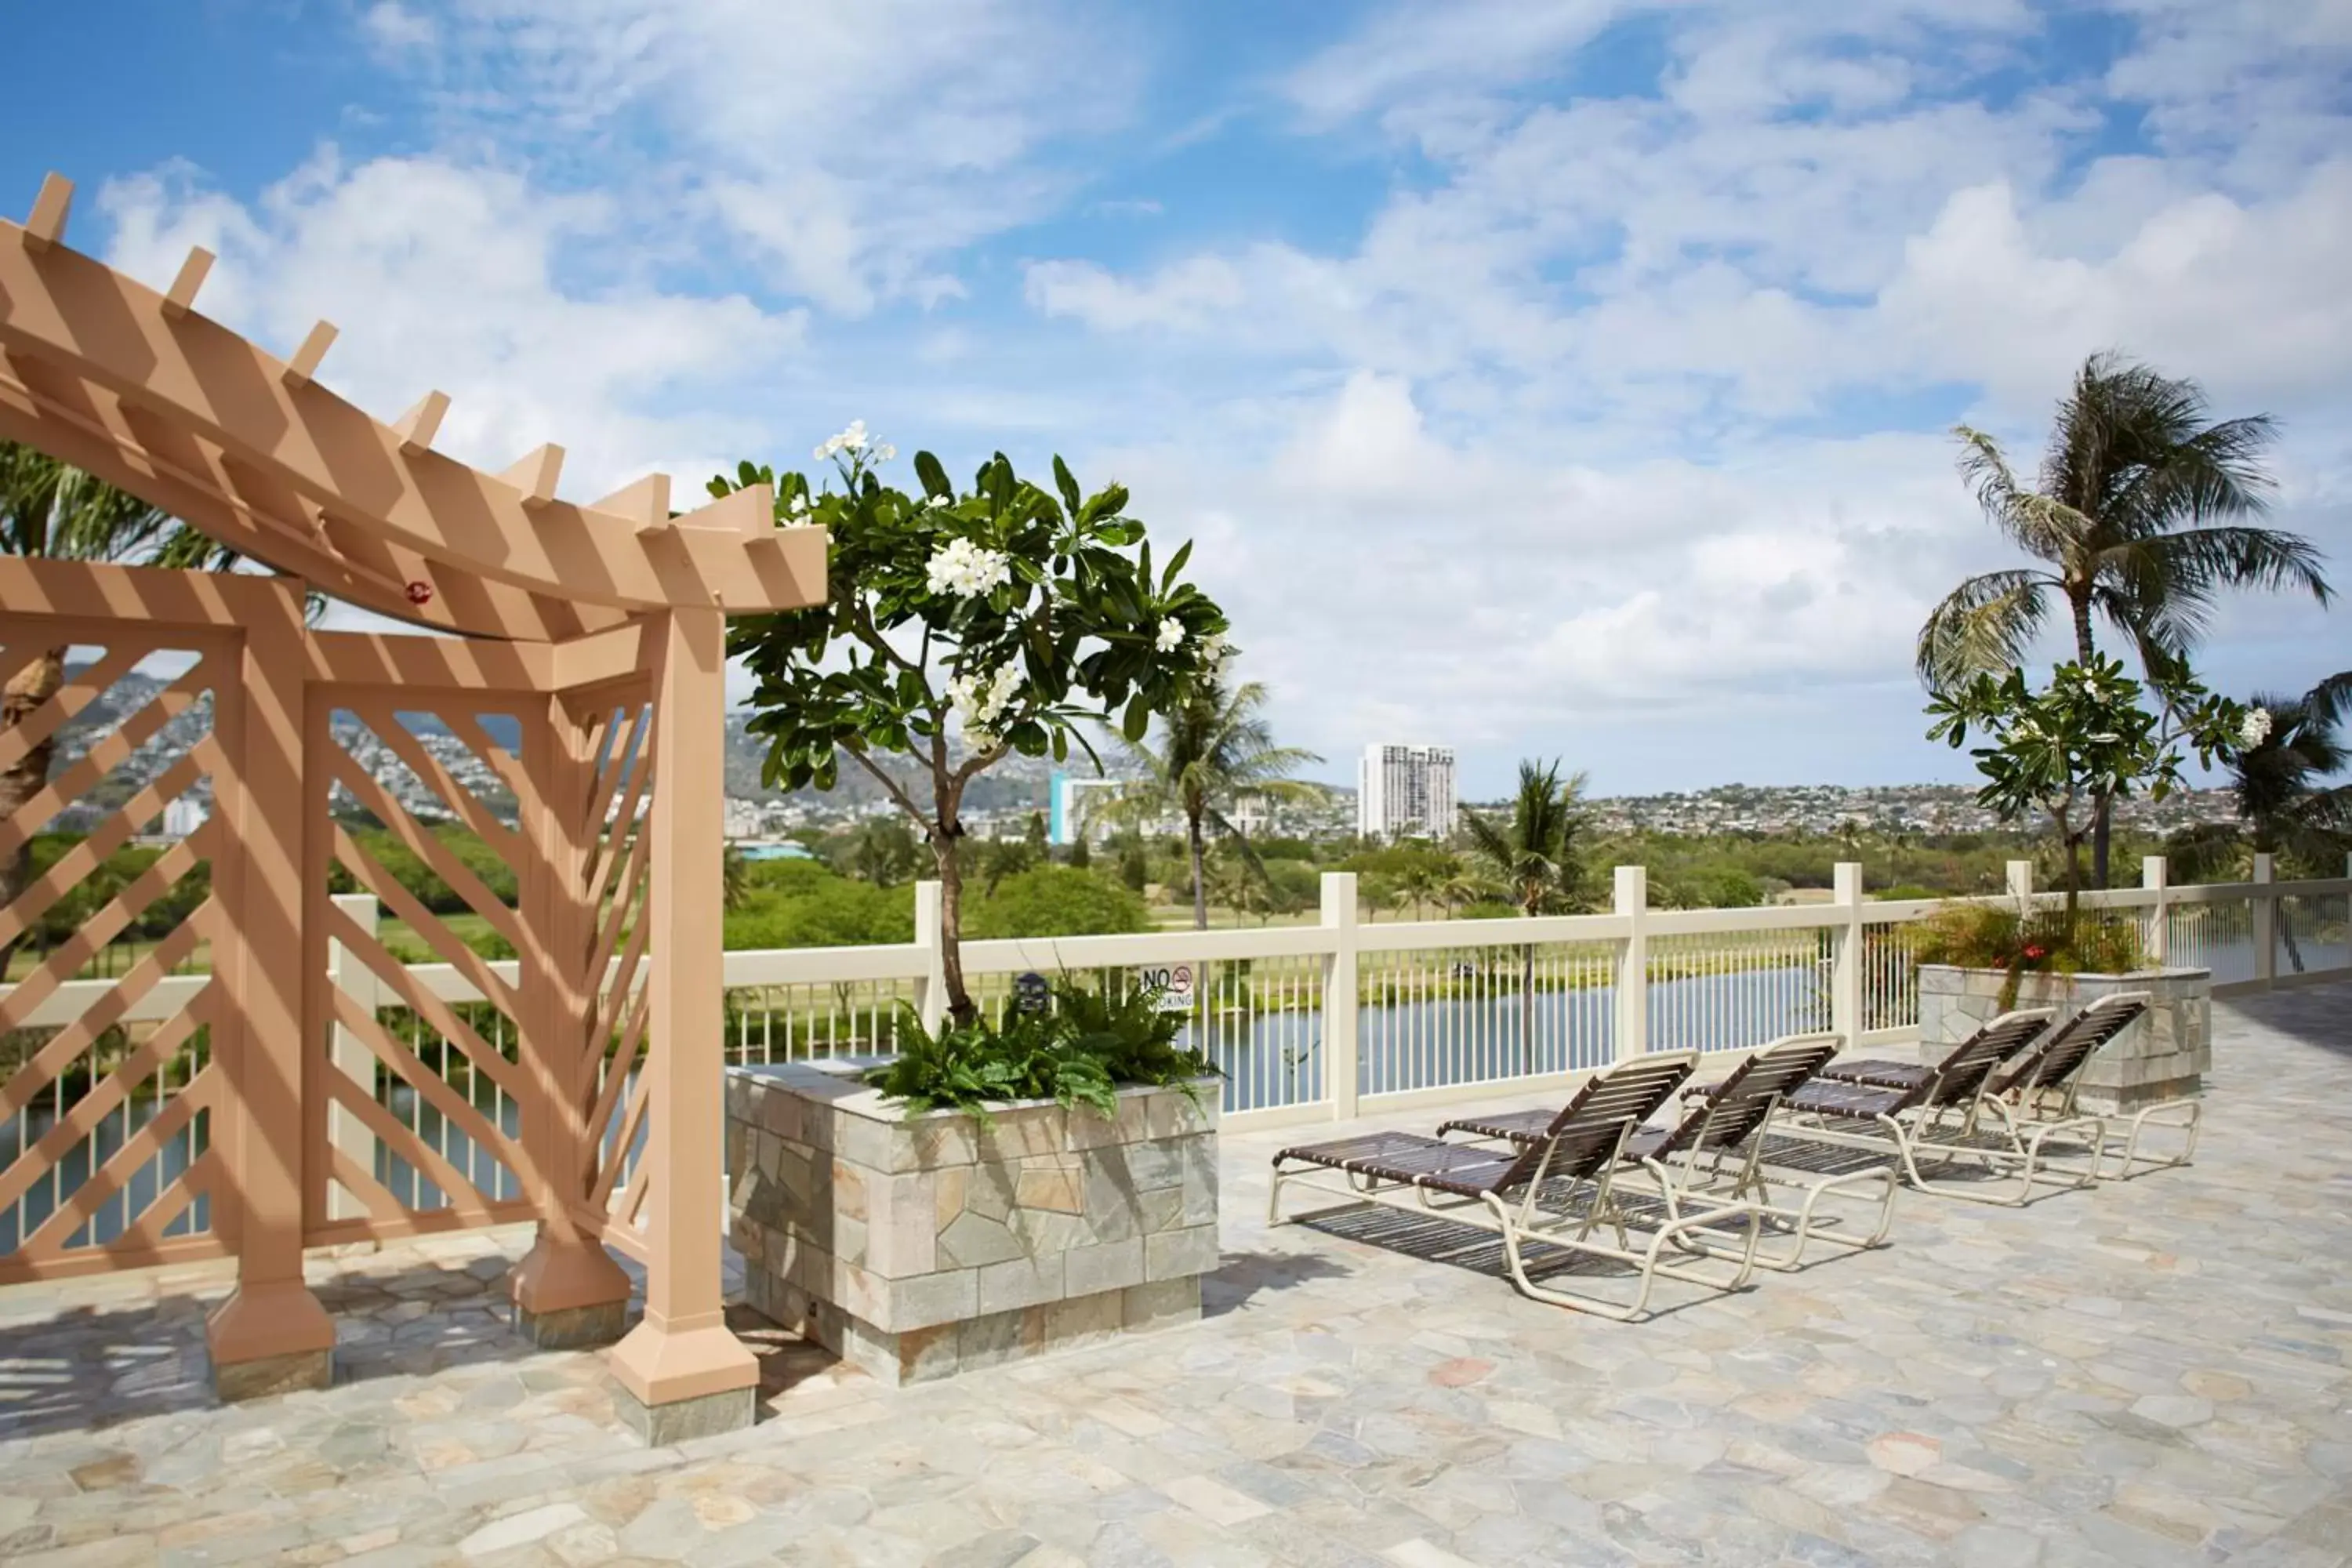 Balcony/Terrace, Patio/Outdoor Area in Aqua Skyline at Island Colony